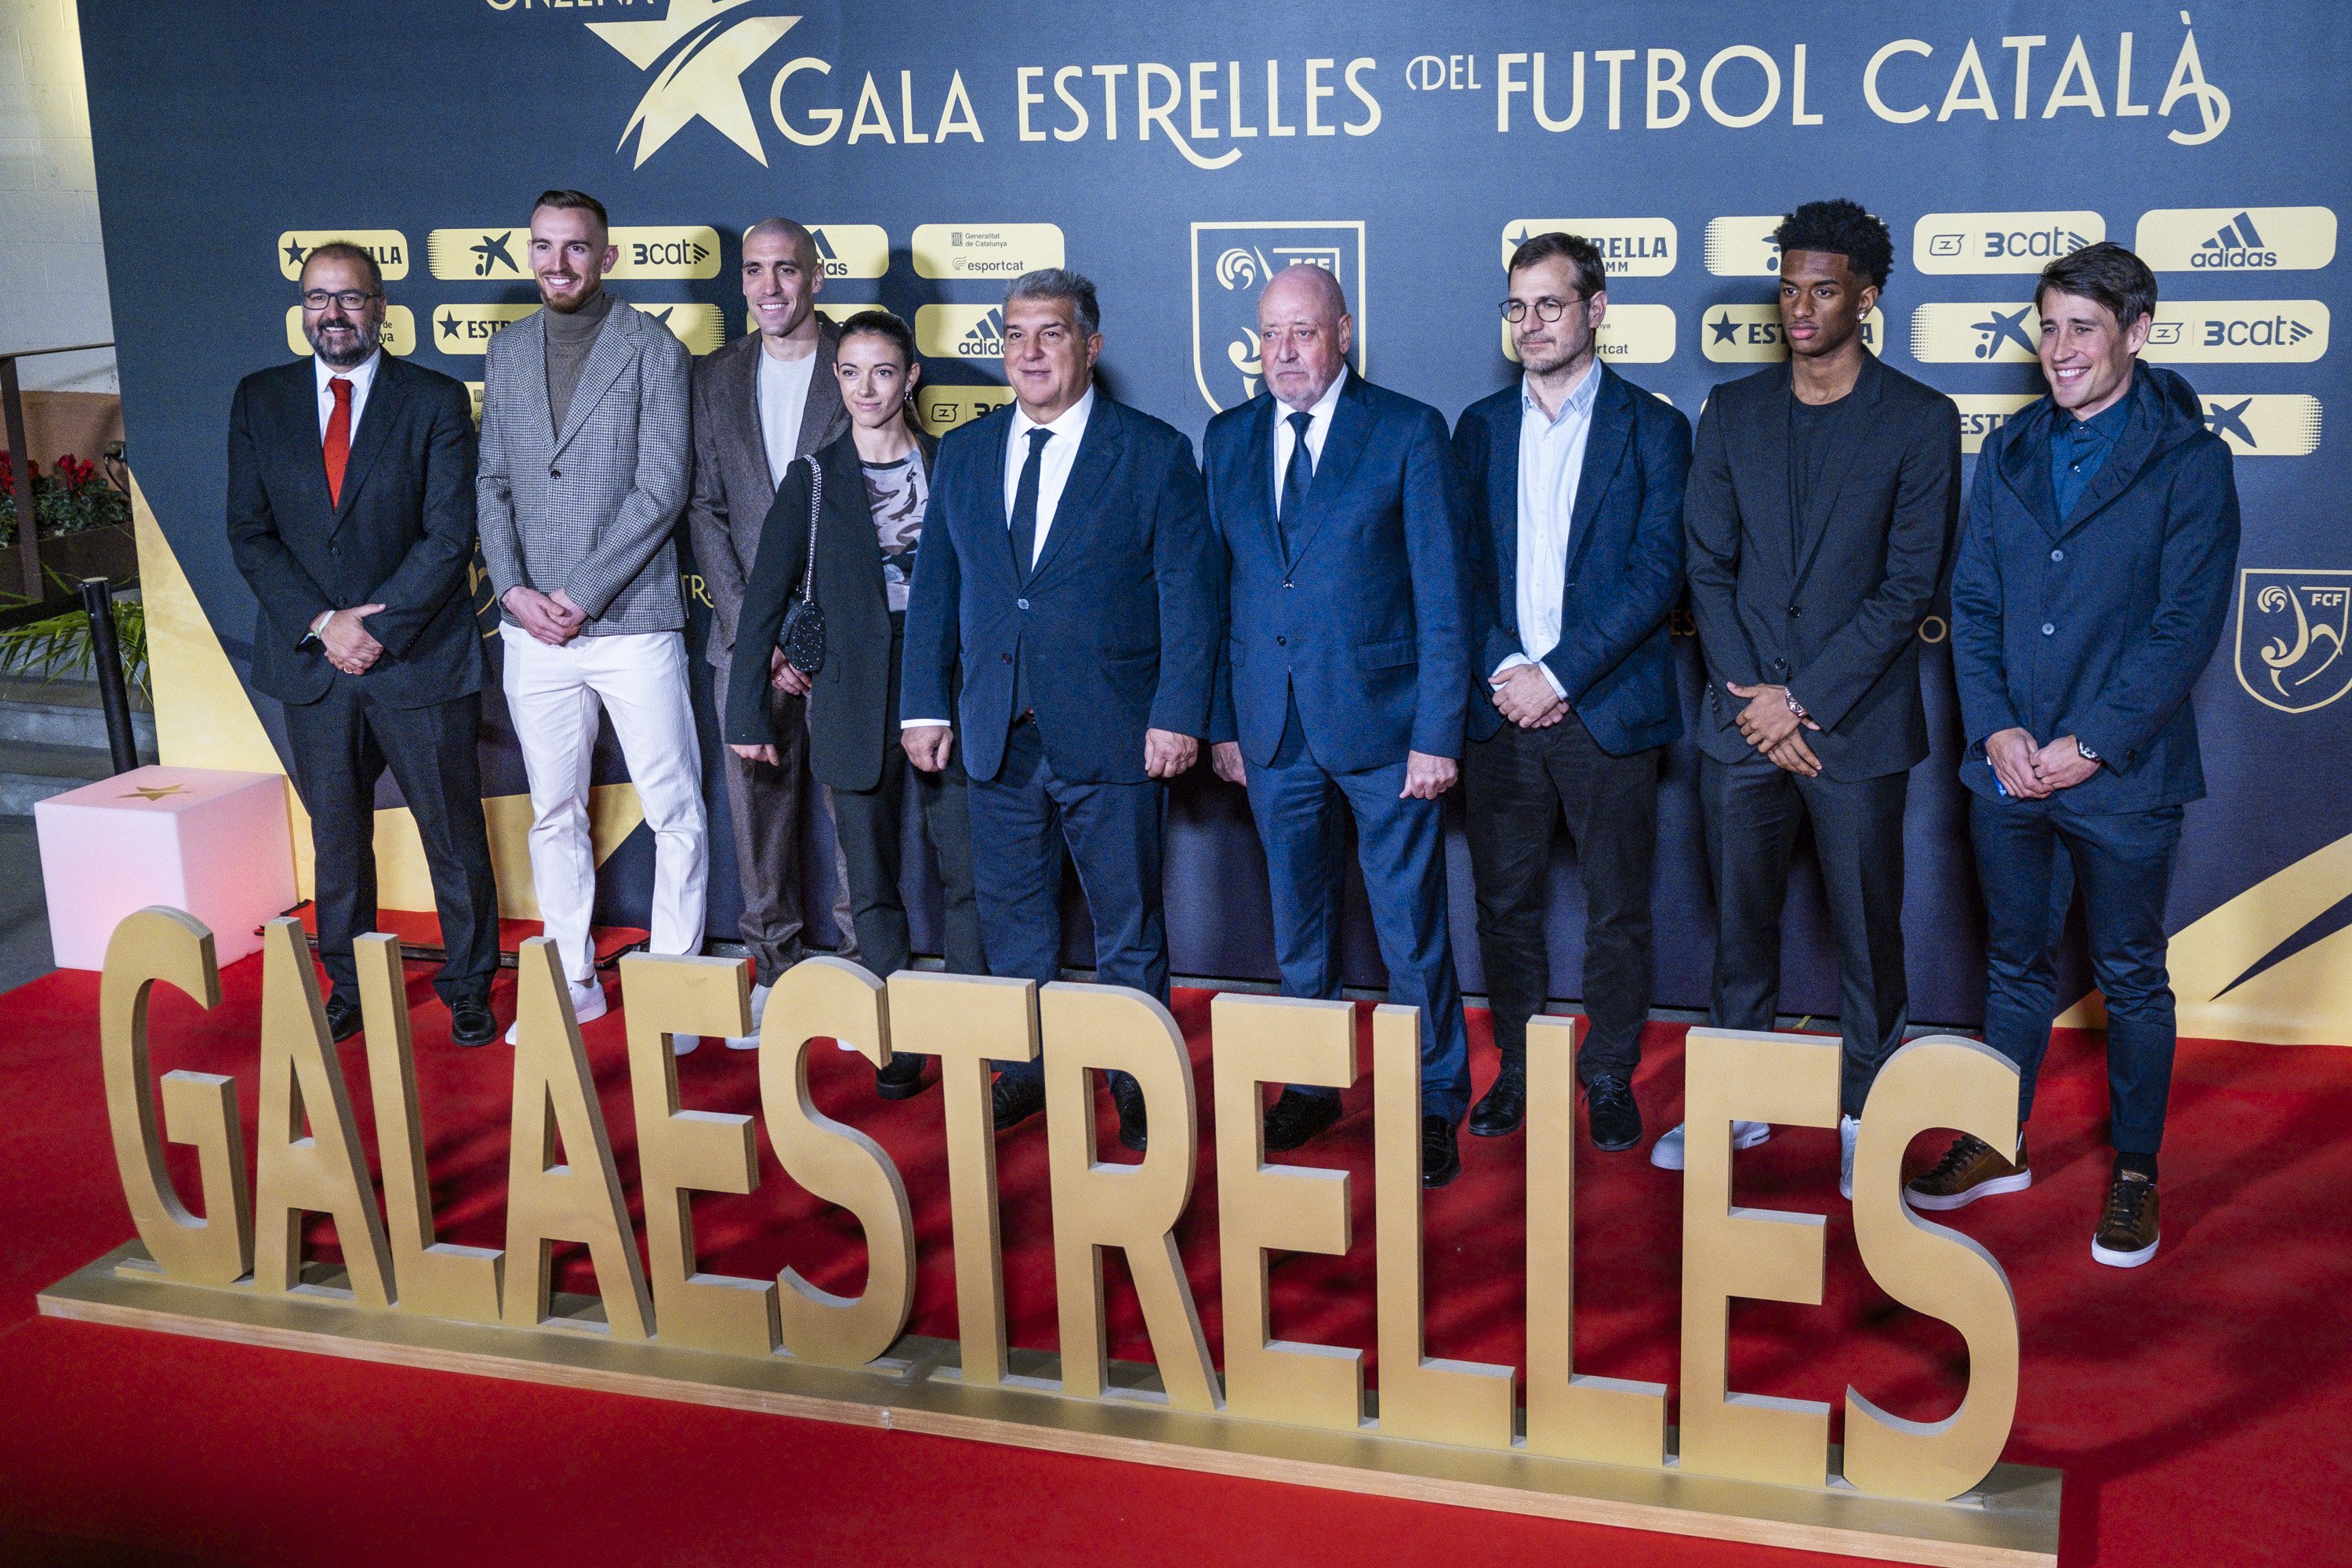 Las estrellas del fútbol catalán se alinean: Aitana Bonmatí y Oriol Romeu, protagonistas absolutos